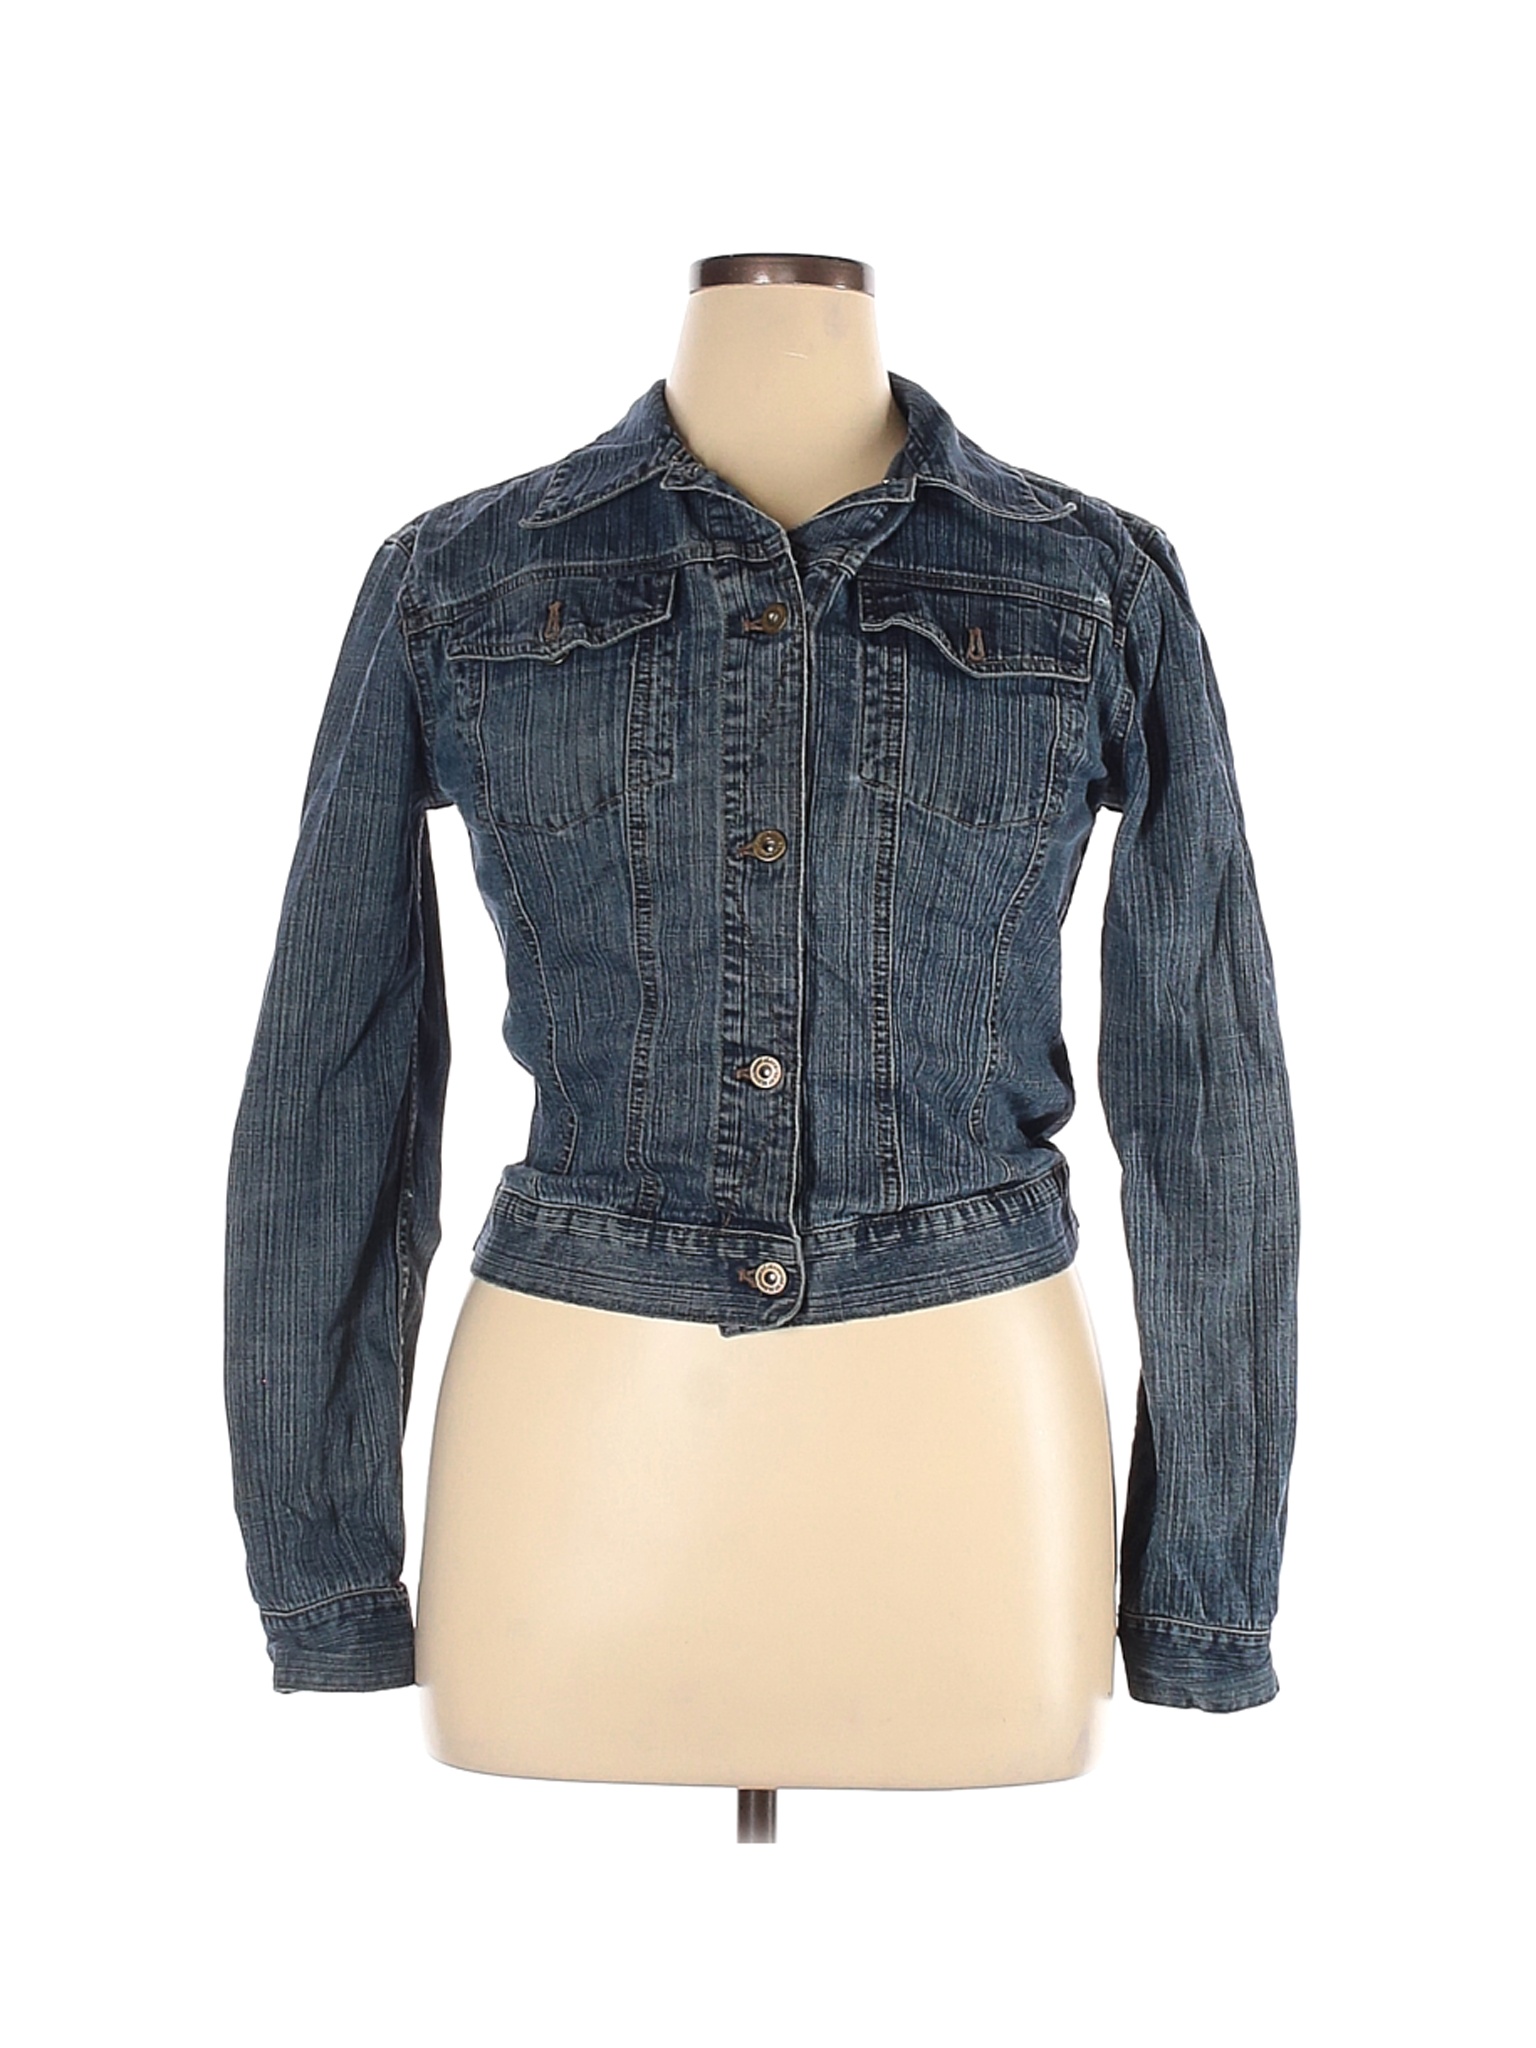 DKNY Women Blue Denim Jacket XL | eBay